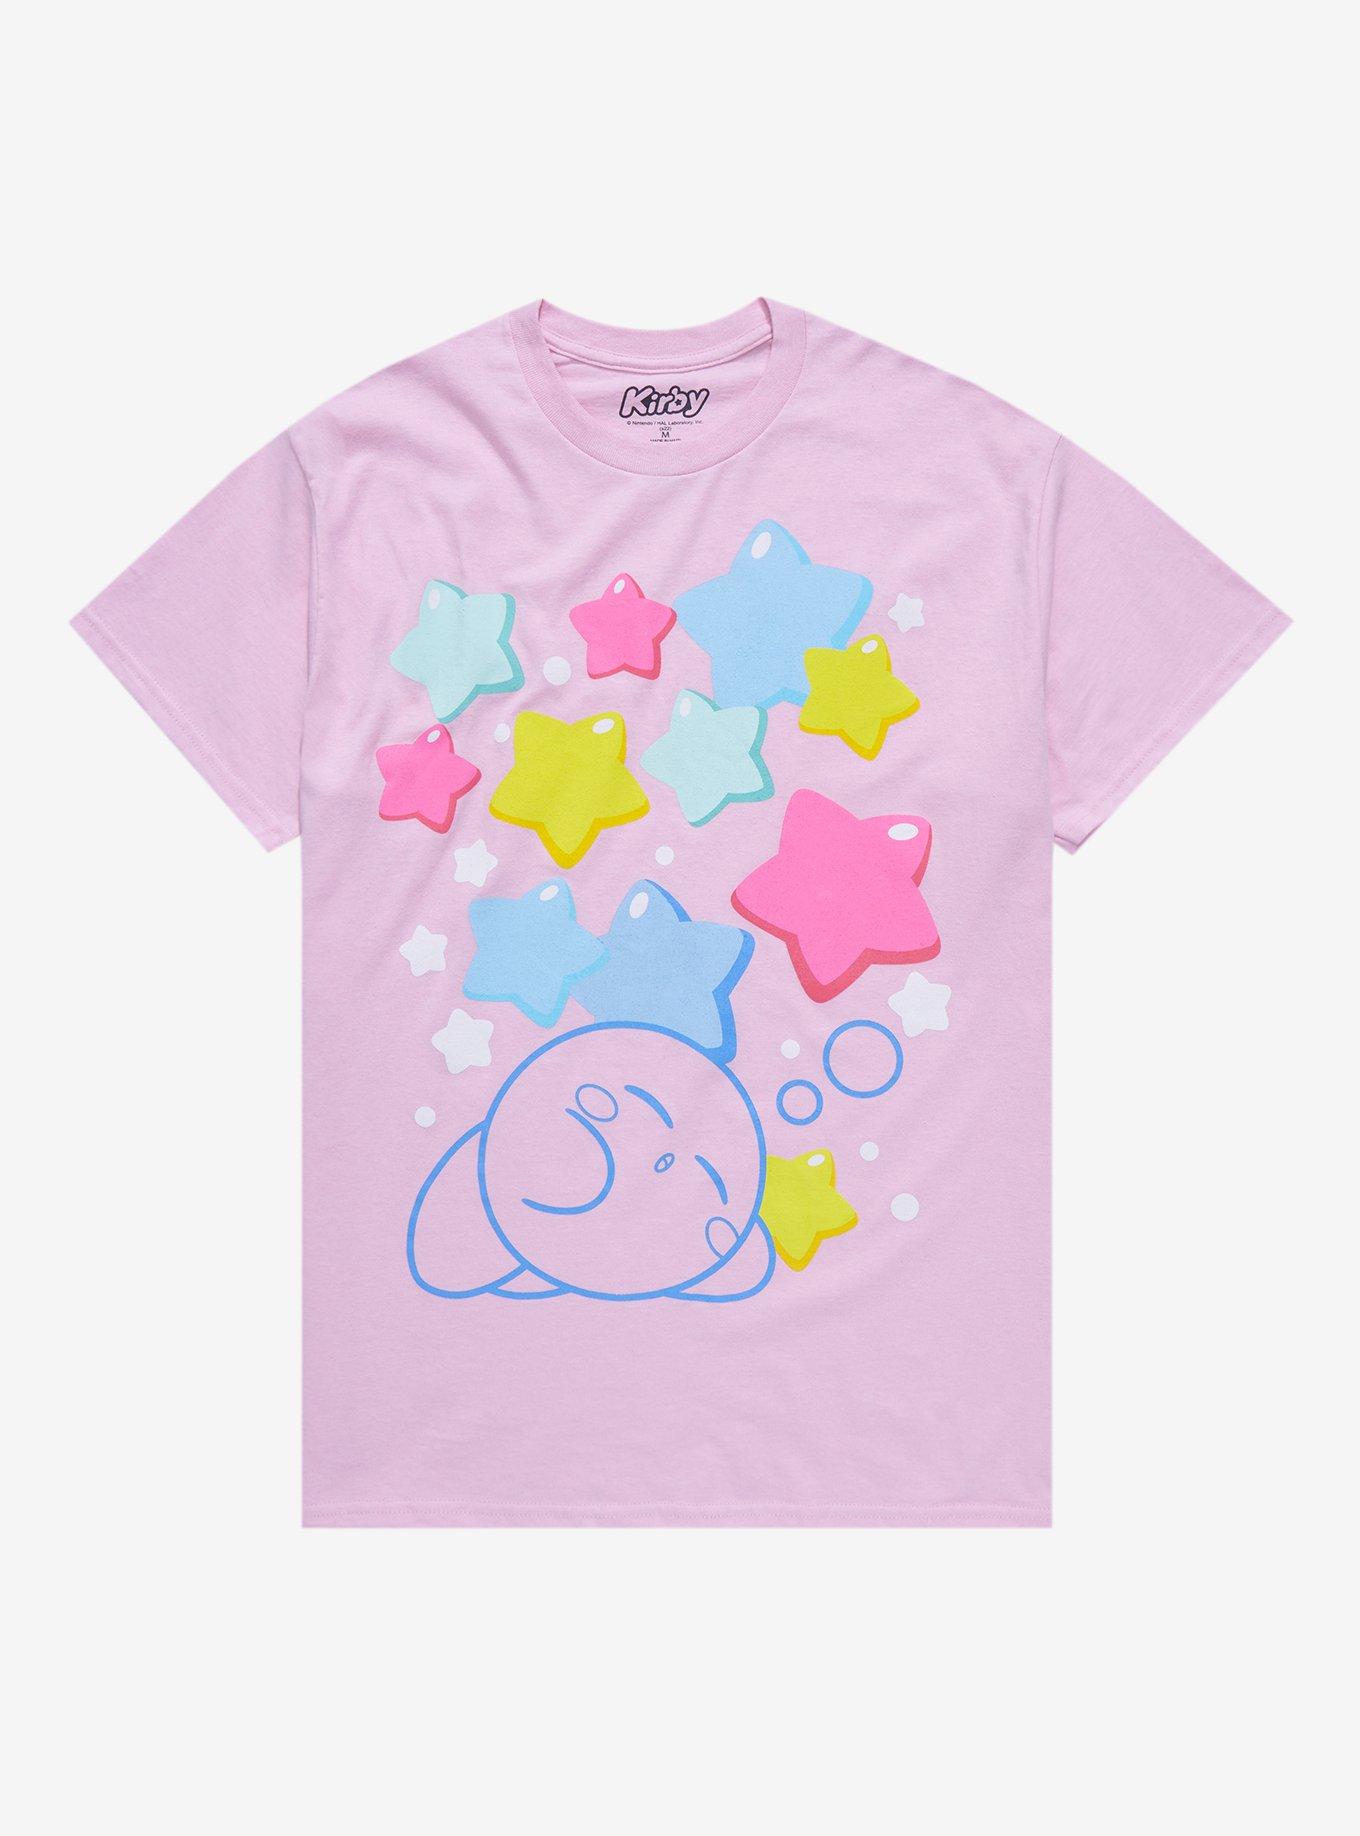 Kirby Pastel Stars Boyfriend Fit Girls T-Shirt, MULTI, hi-res